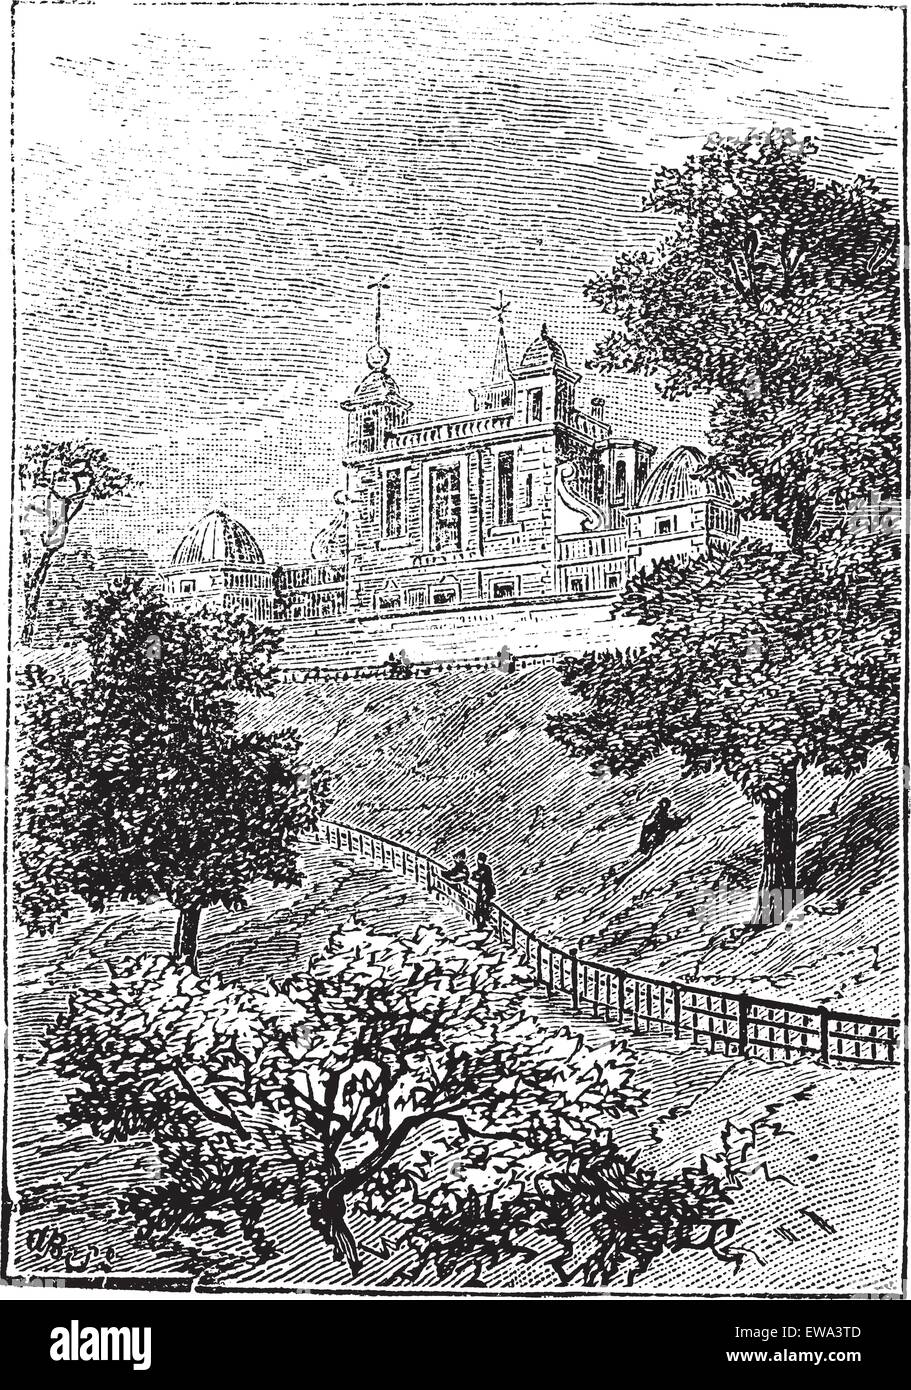 Royal Observatory in Greenwich, London, England, Vereinigtes Königreich, graviert Vintage Illustration. Trousset Enzyklopädie (1886-1891). Stock Vektor